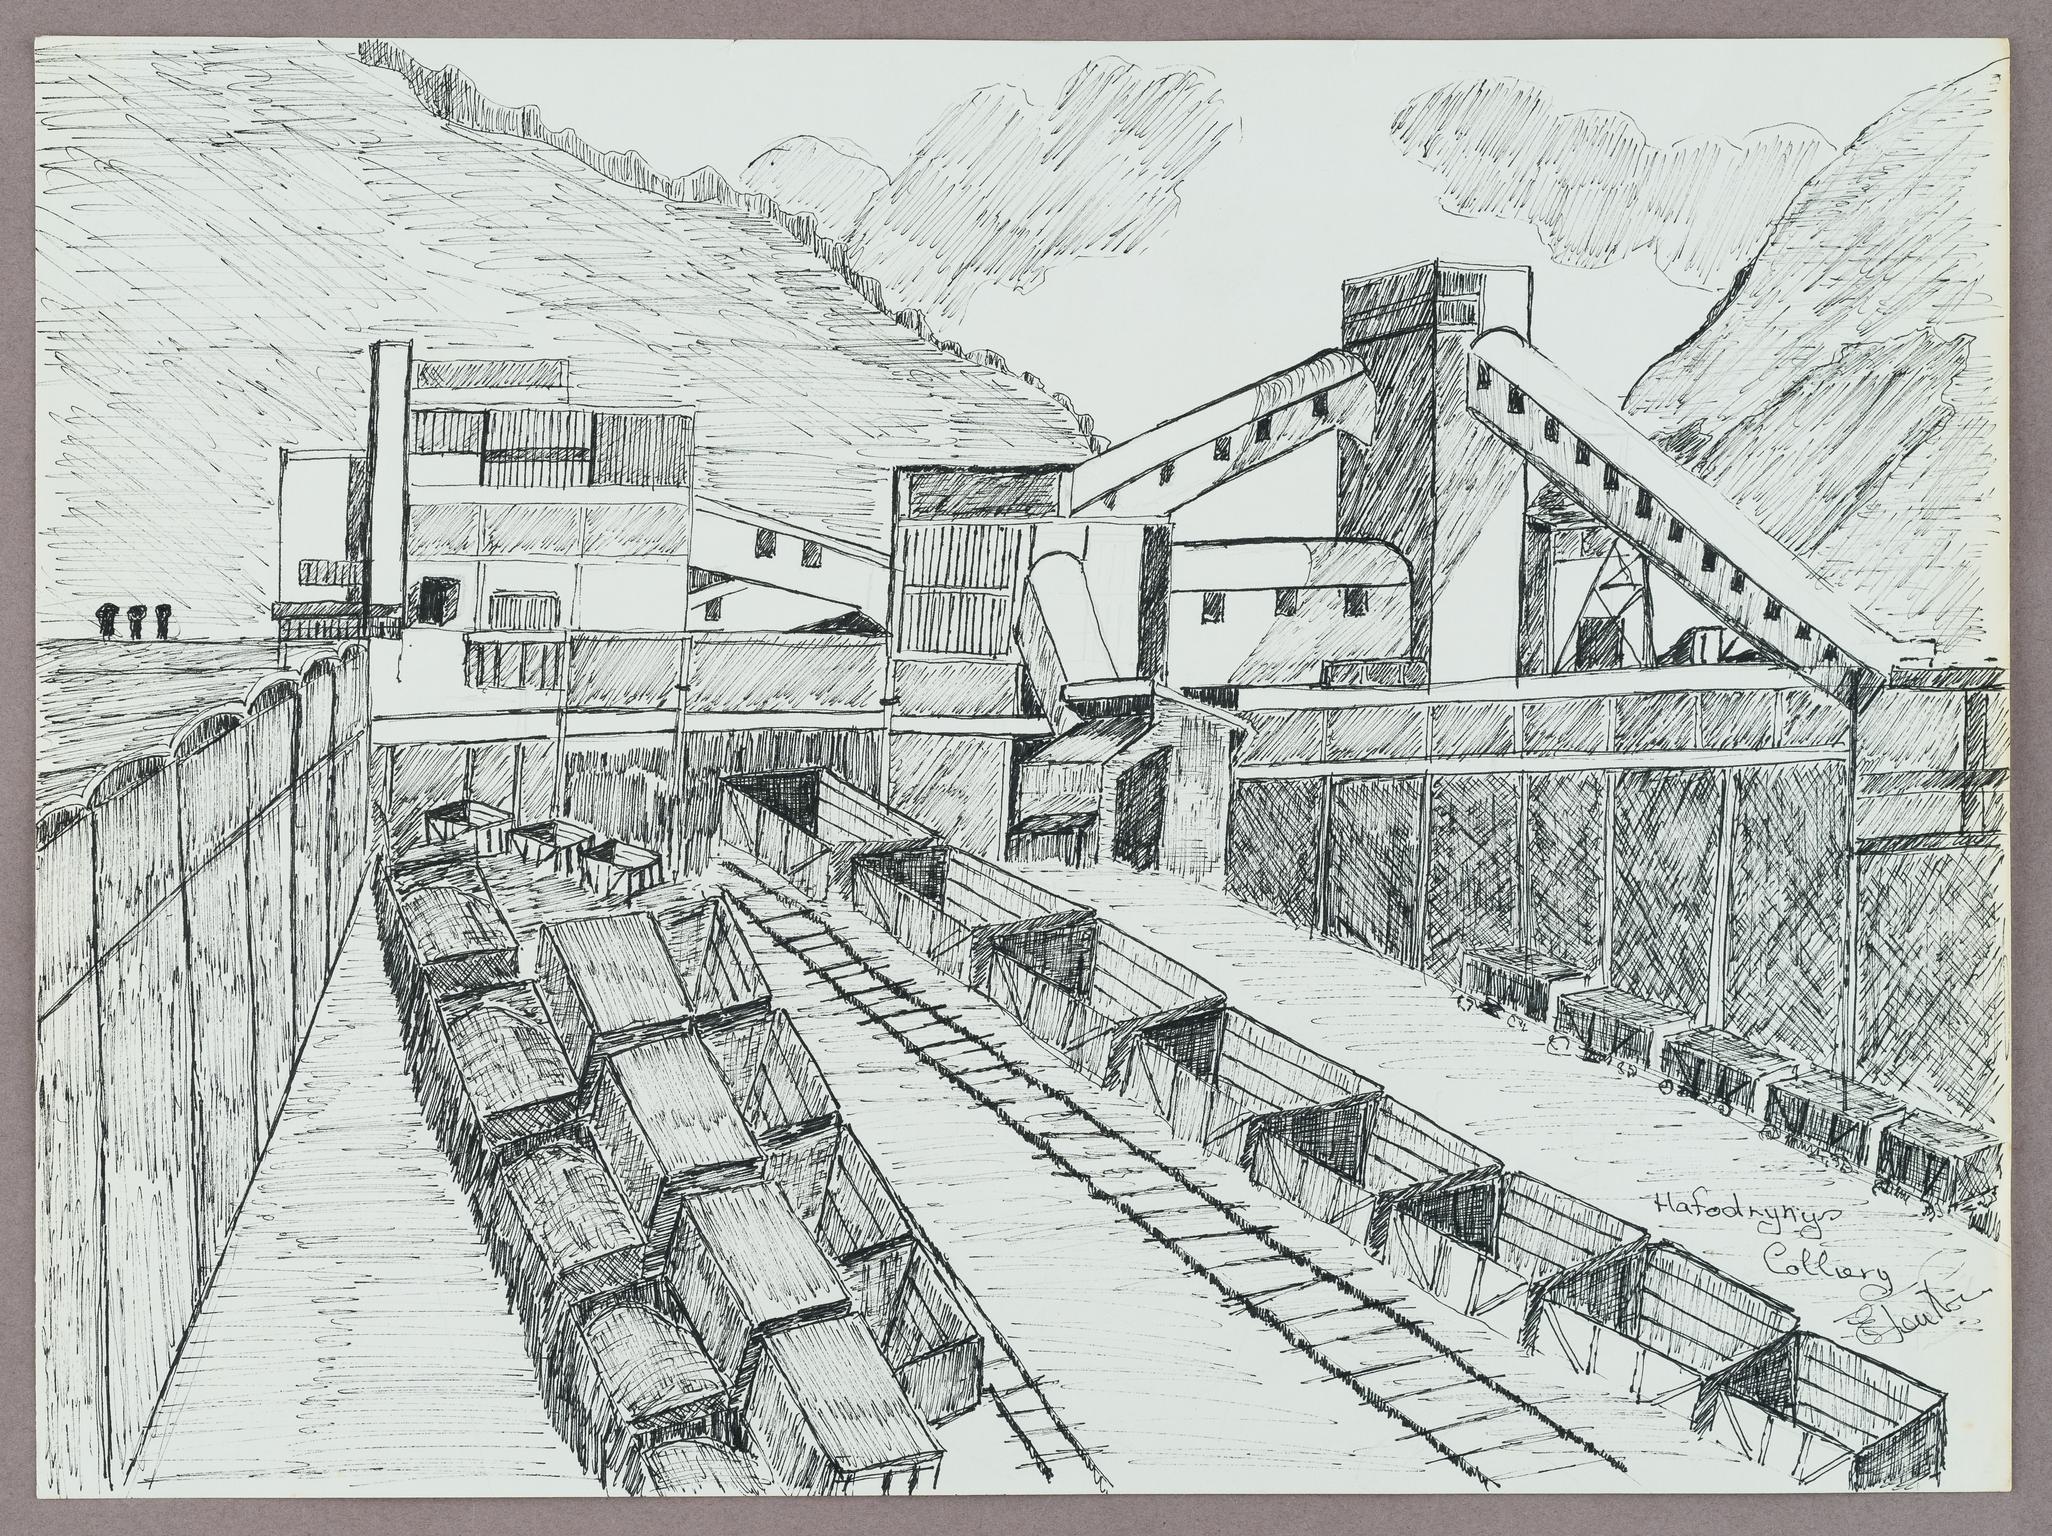 Hafodyrynys Colliery (drawing)